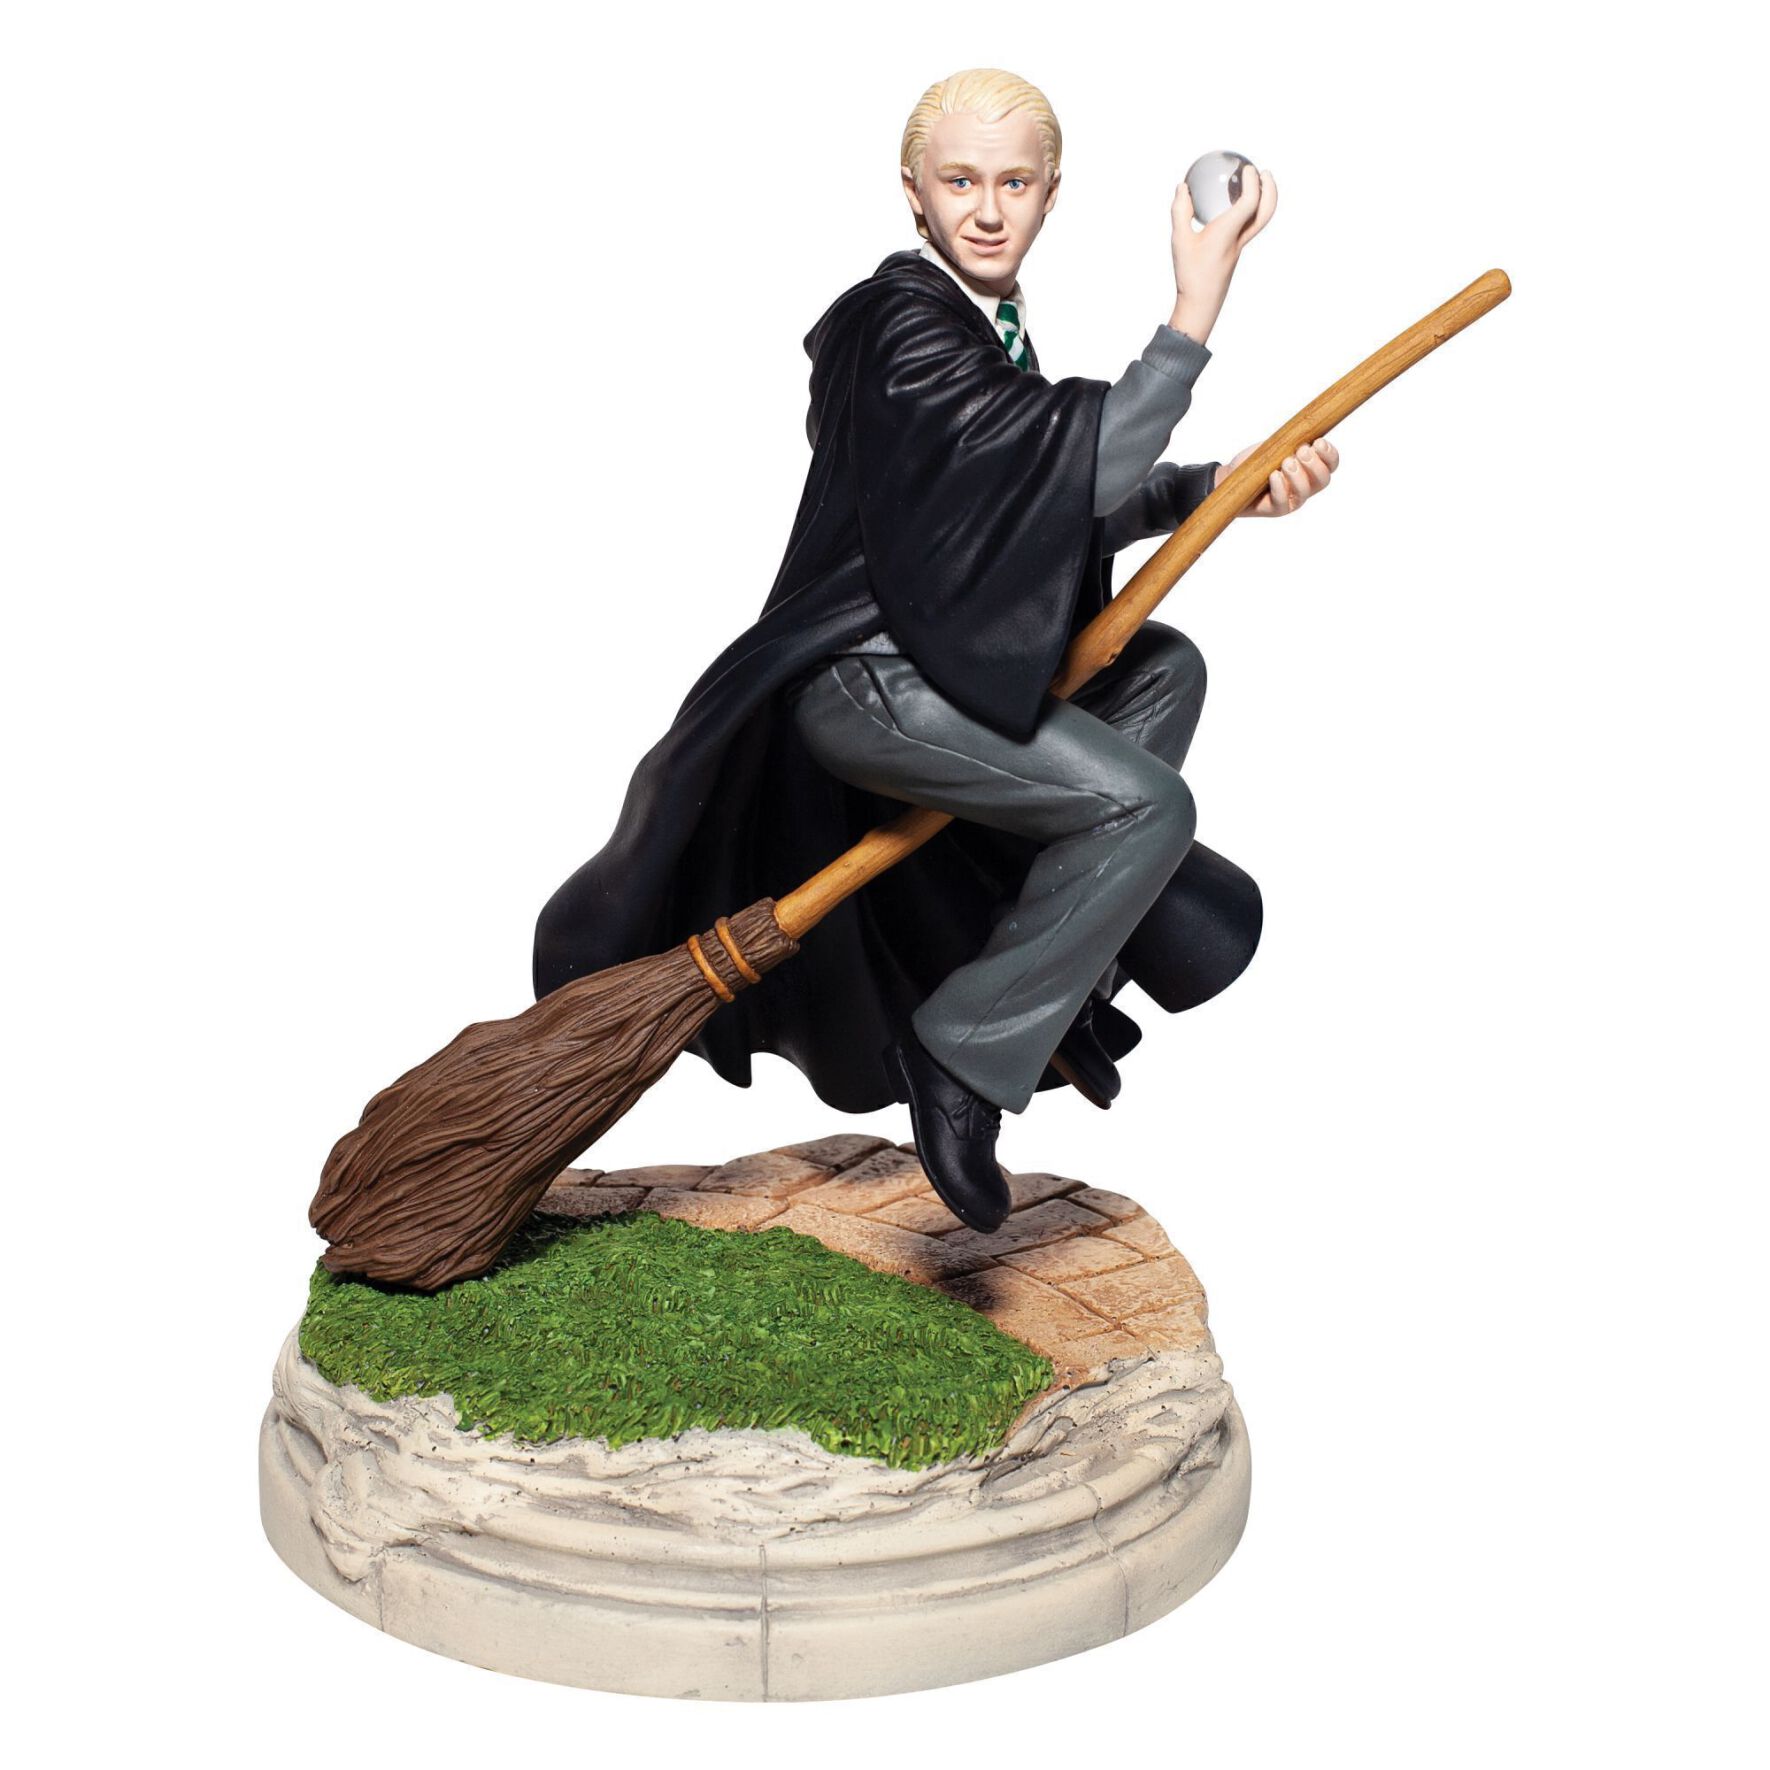  مجسمه دراکو مالفی Draco Quidditch Year Two Fig 